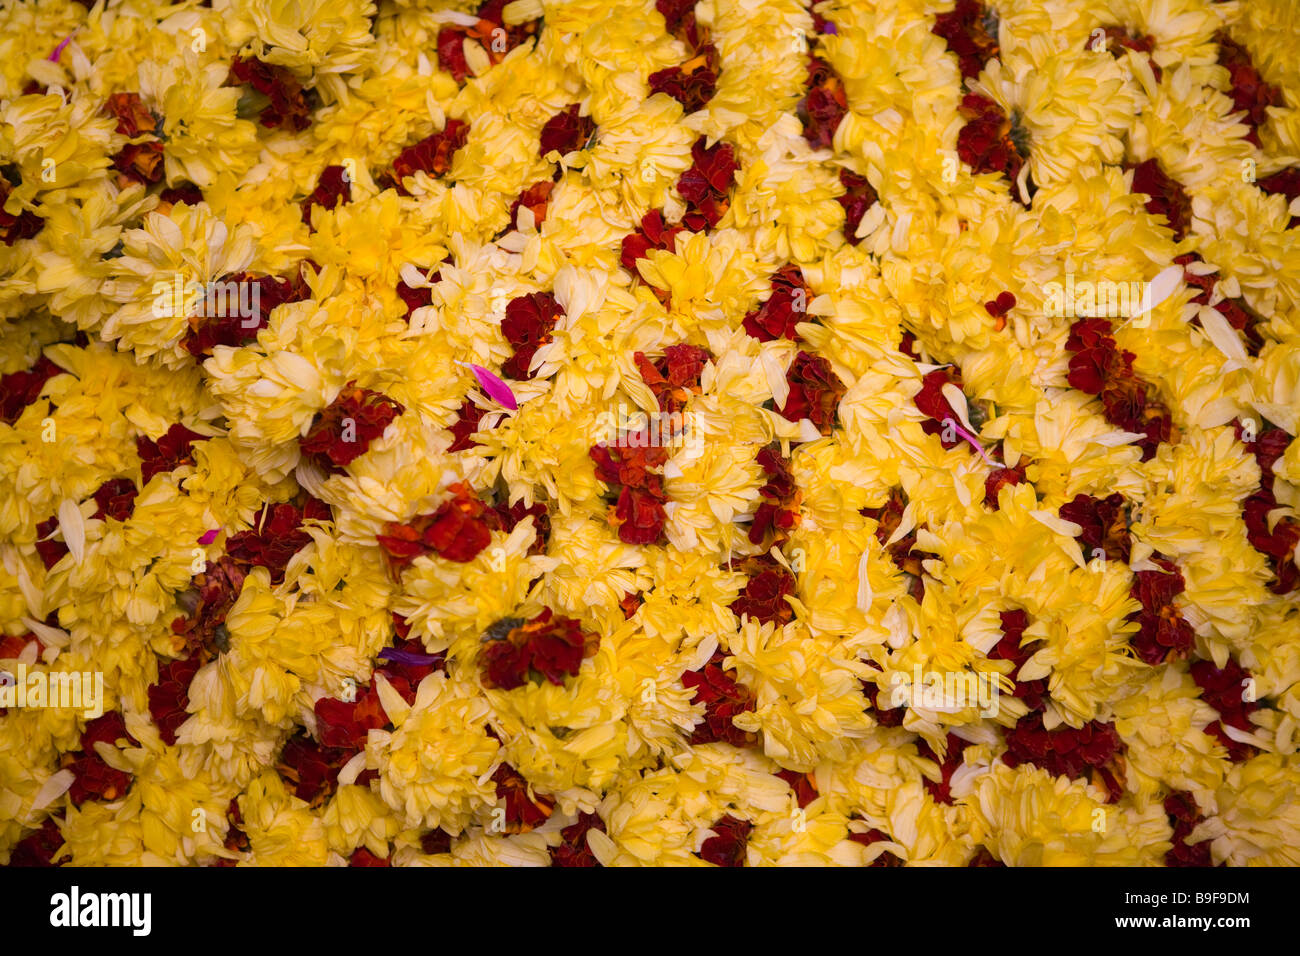 India Bengaluru Bangalore città mercato di fiori collana venditori Foto Stock